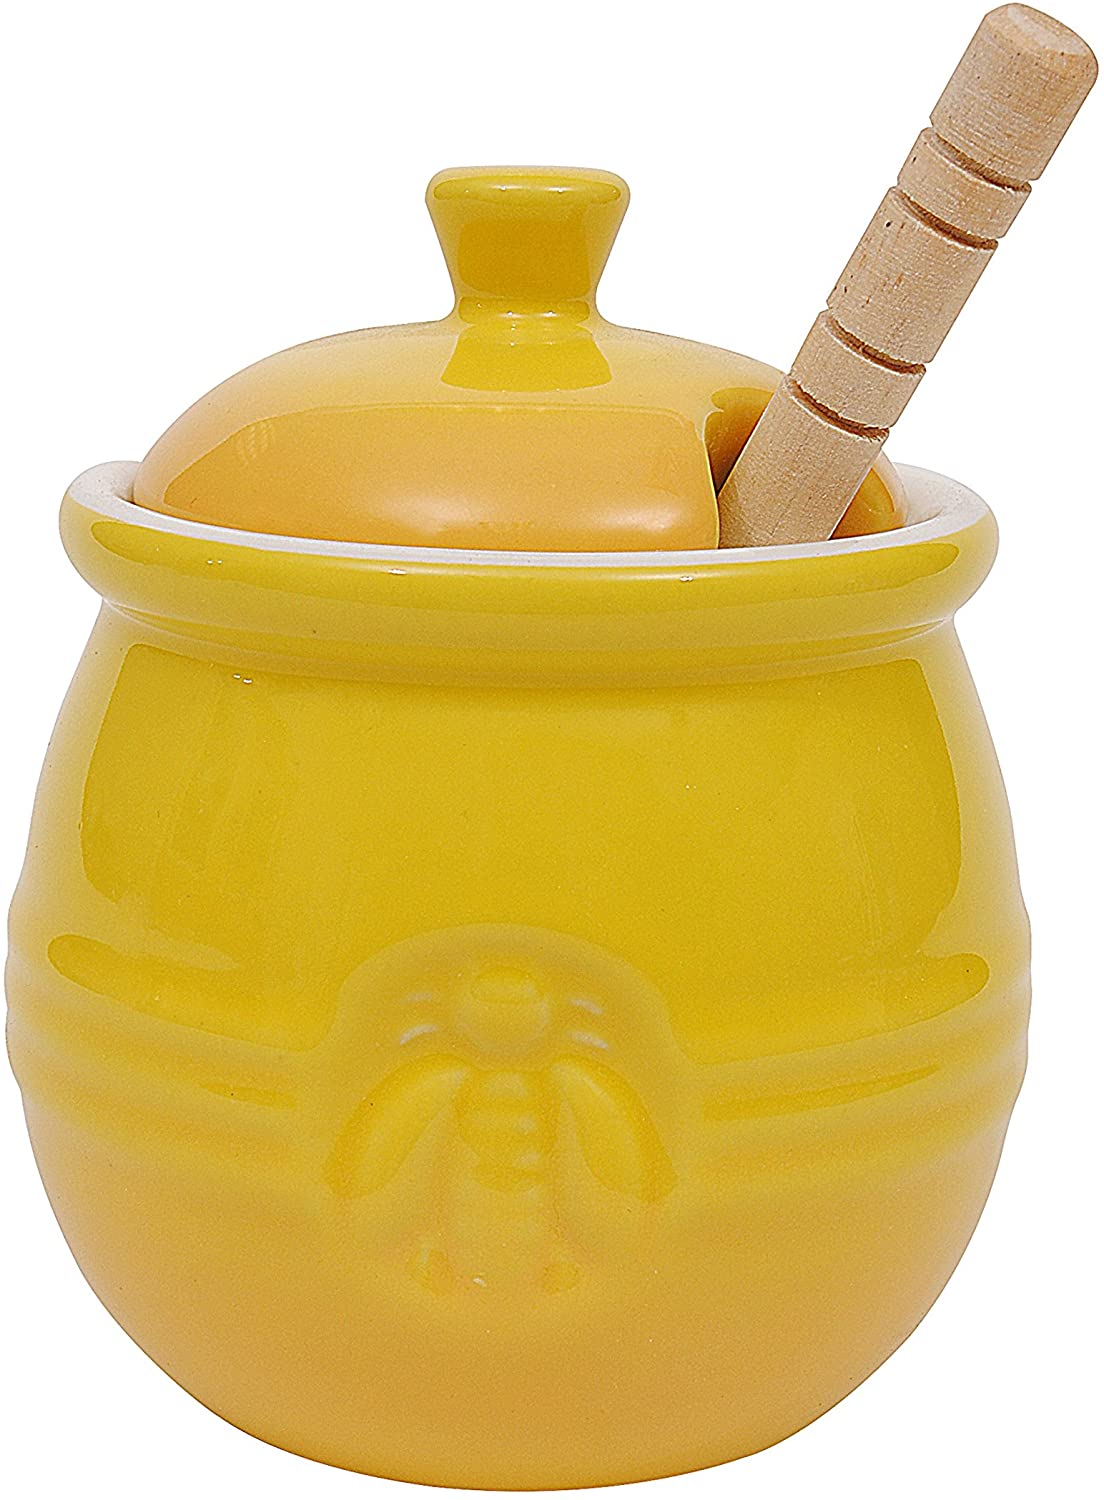 AB - Honey Jar